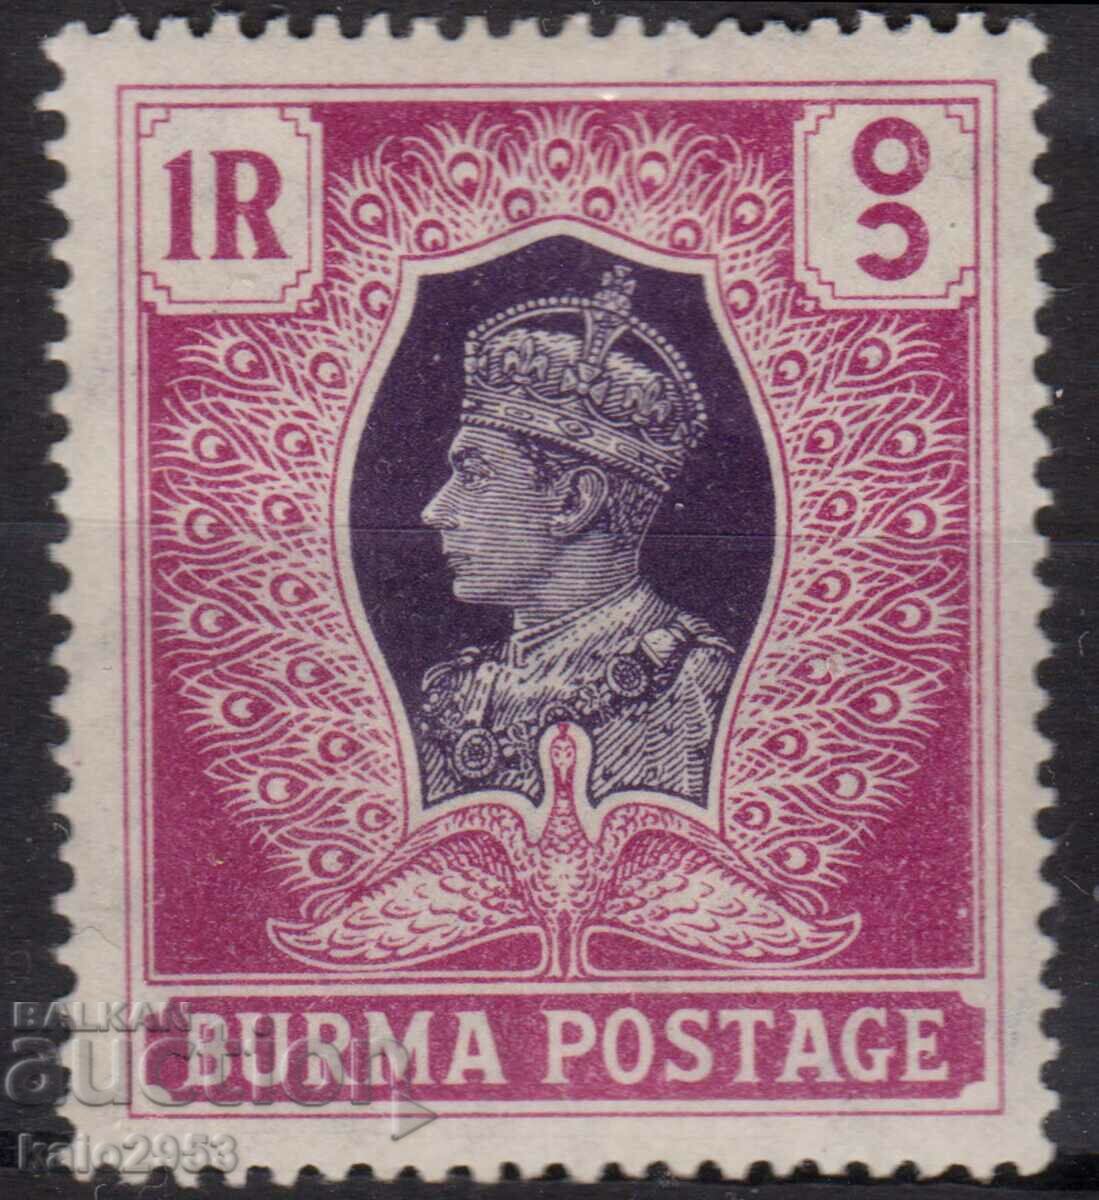 GB/Birmania-1946-Regular-KG V,MLH